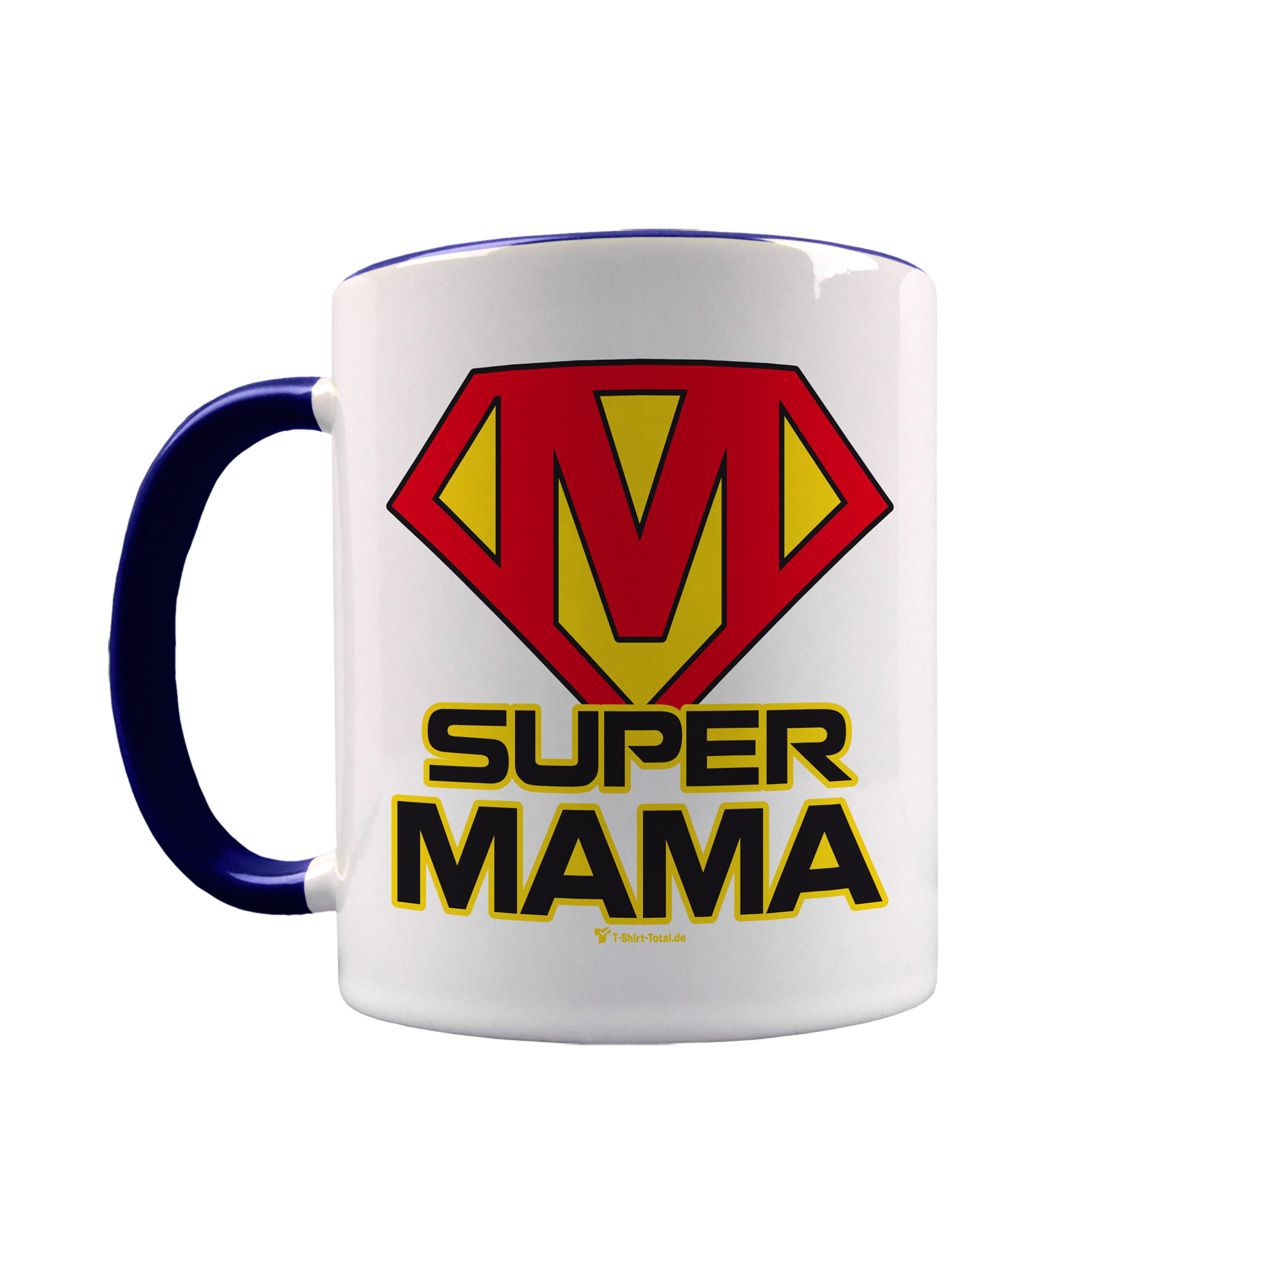 Super Mama Tasse schwarz / weiß